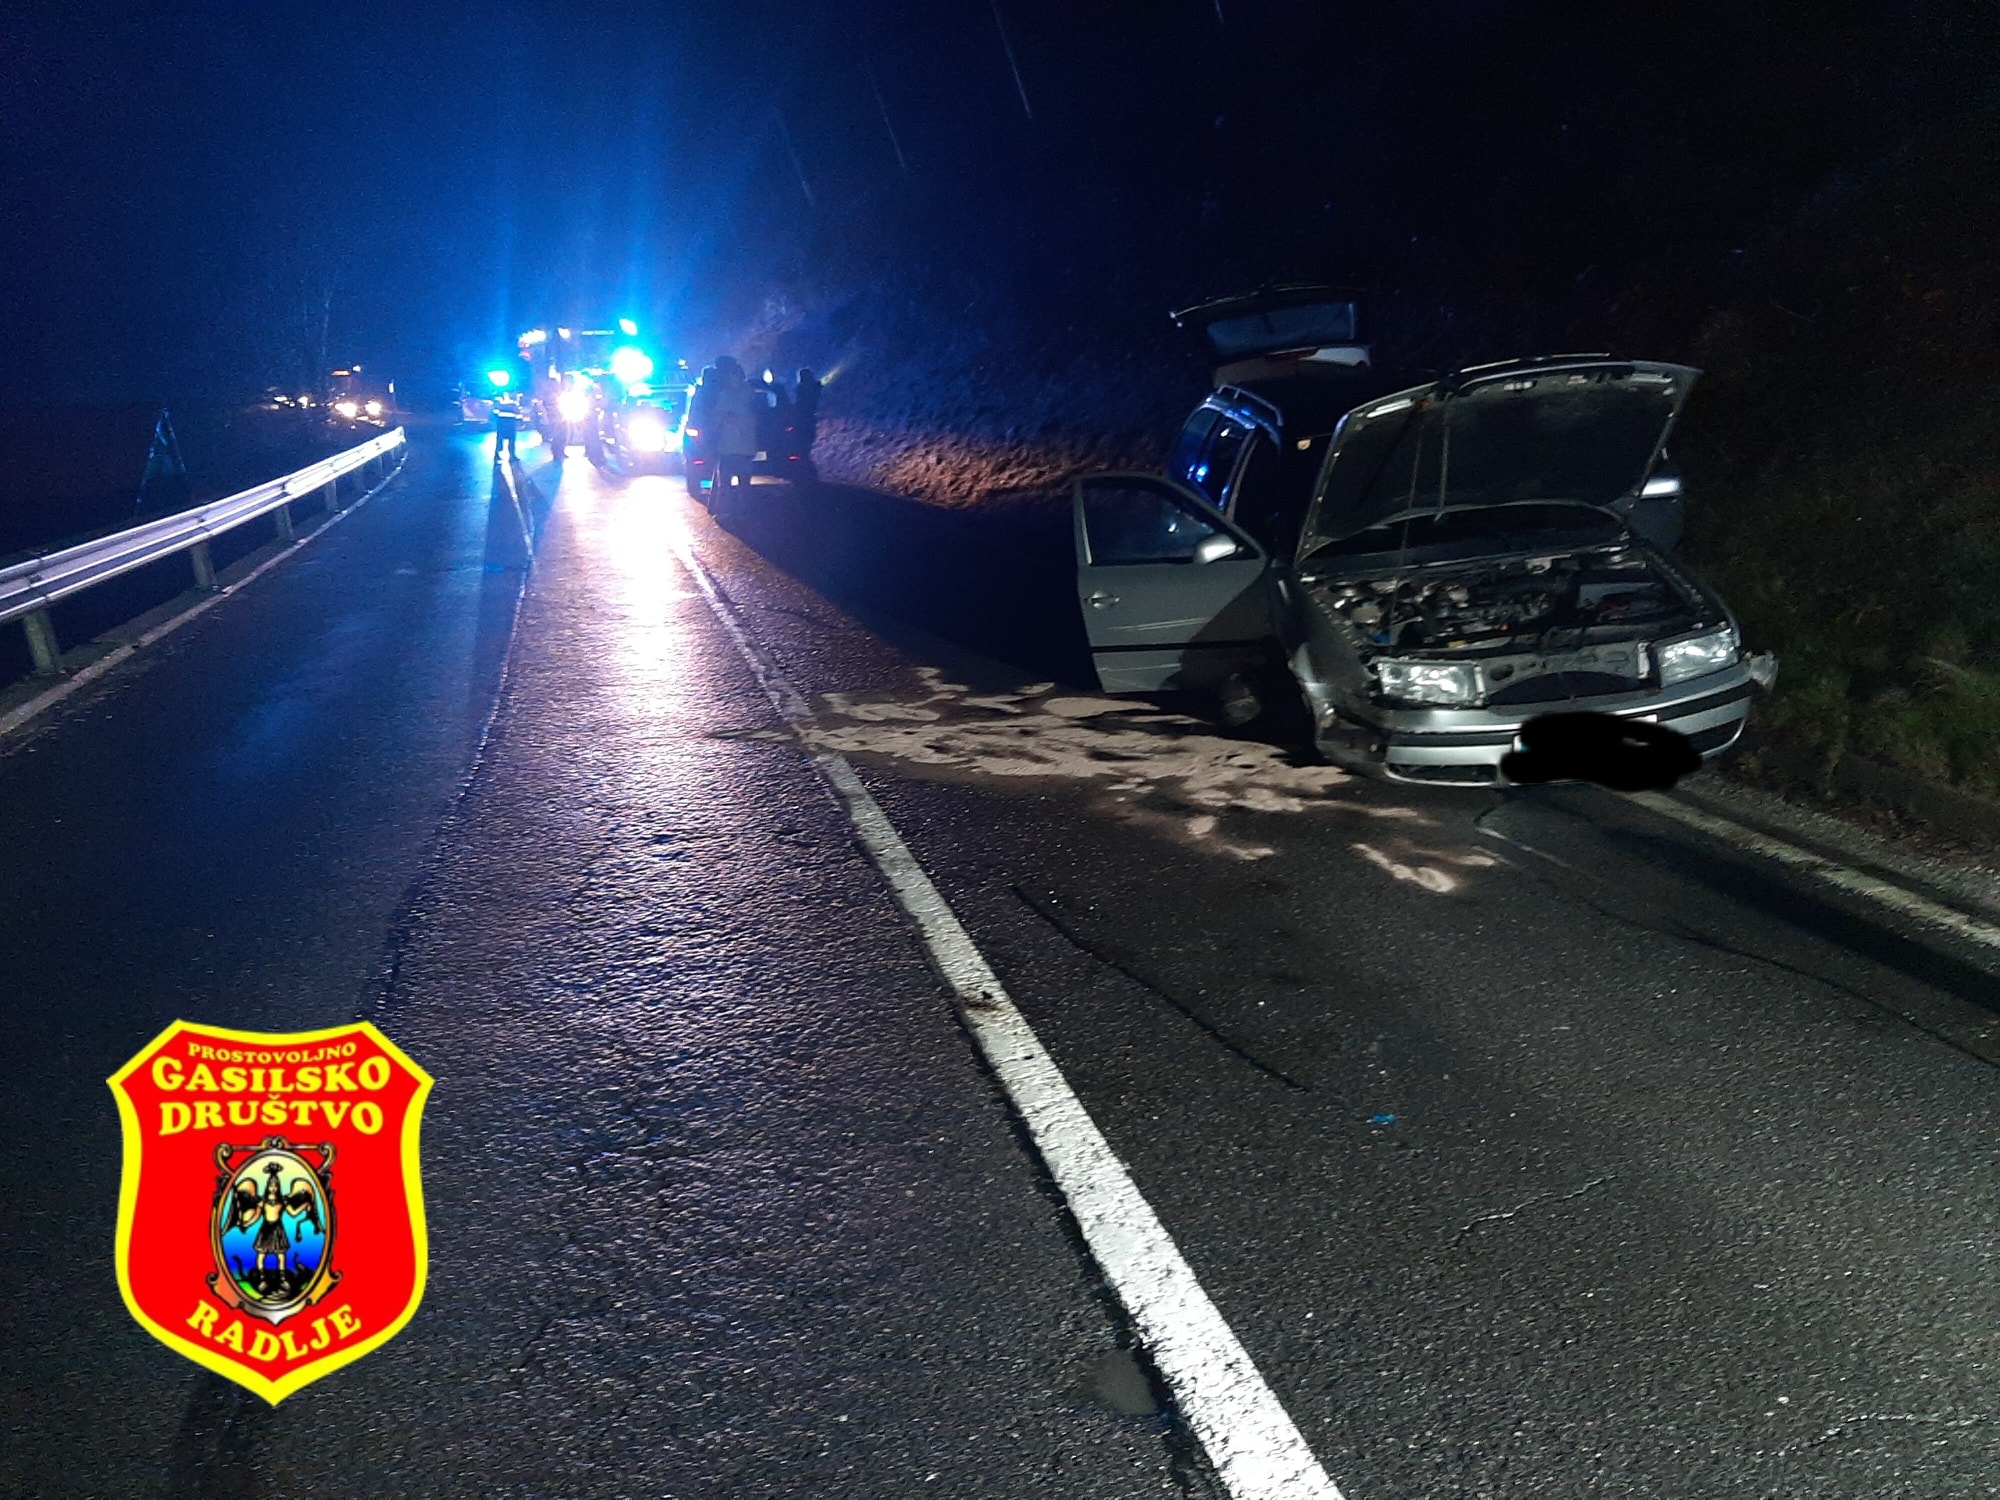 FOTO: Včeraj zvečer v Podvelki prišlo do prometne nesreče